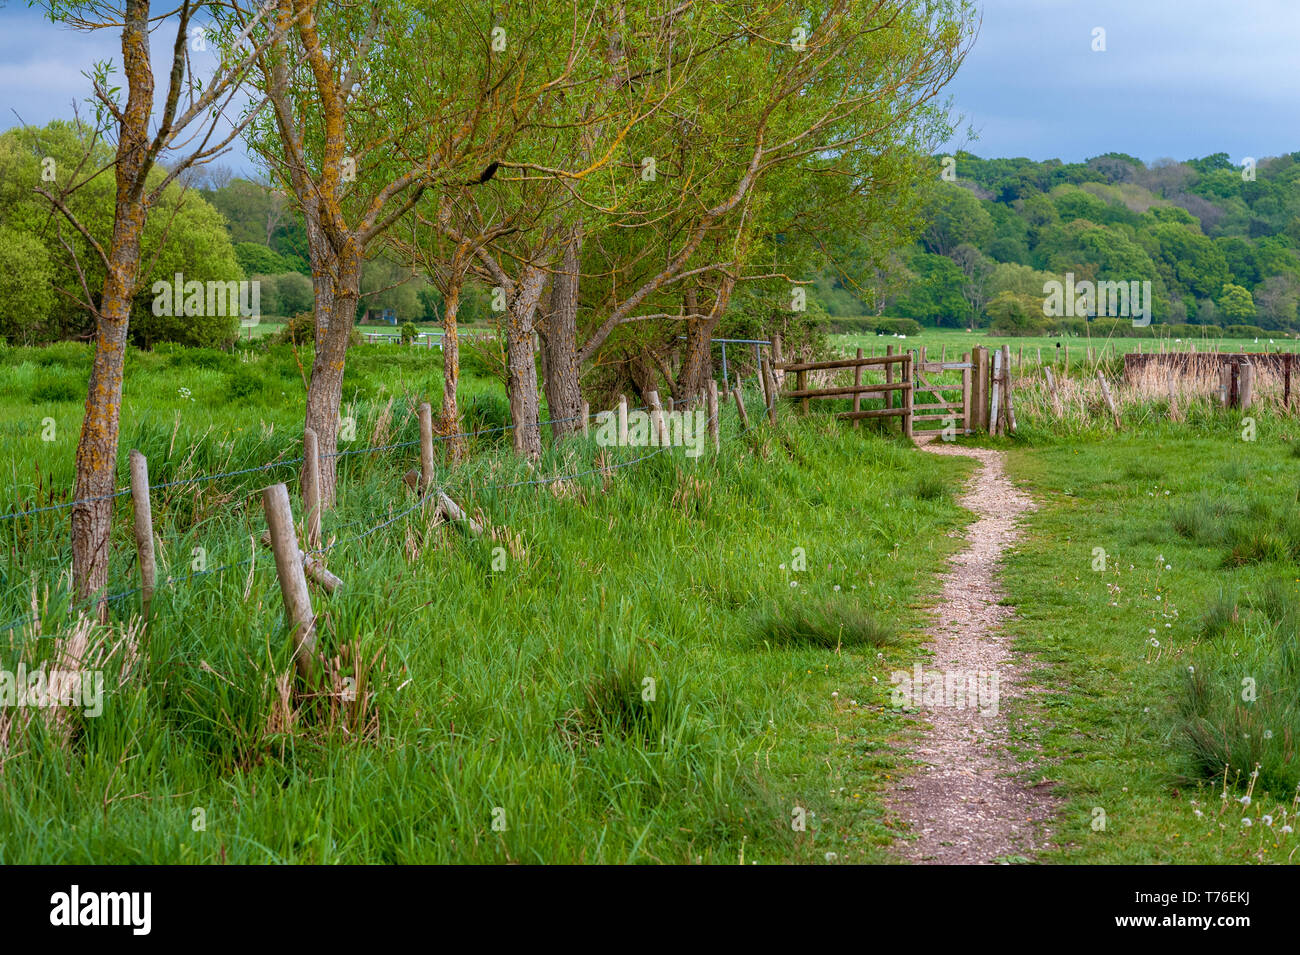 Verde campagna inglese scena con uno stretto sentiero che conduce verso un cancello e una linea di alberi su un lato. Foto Stock